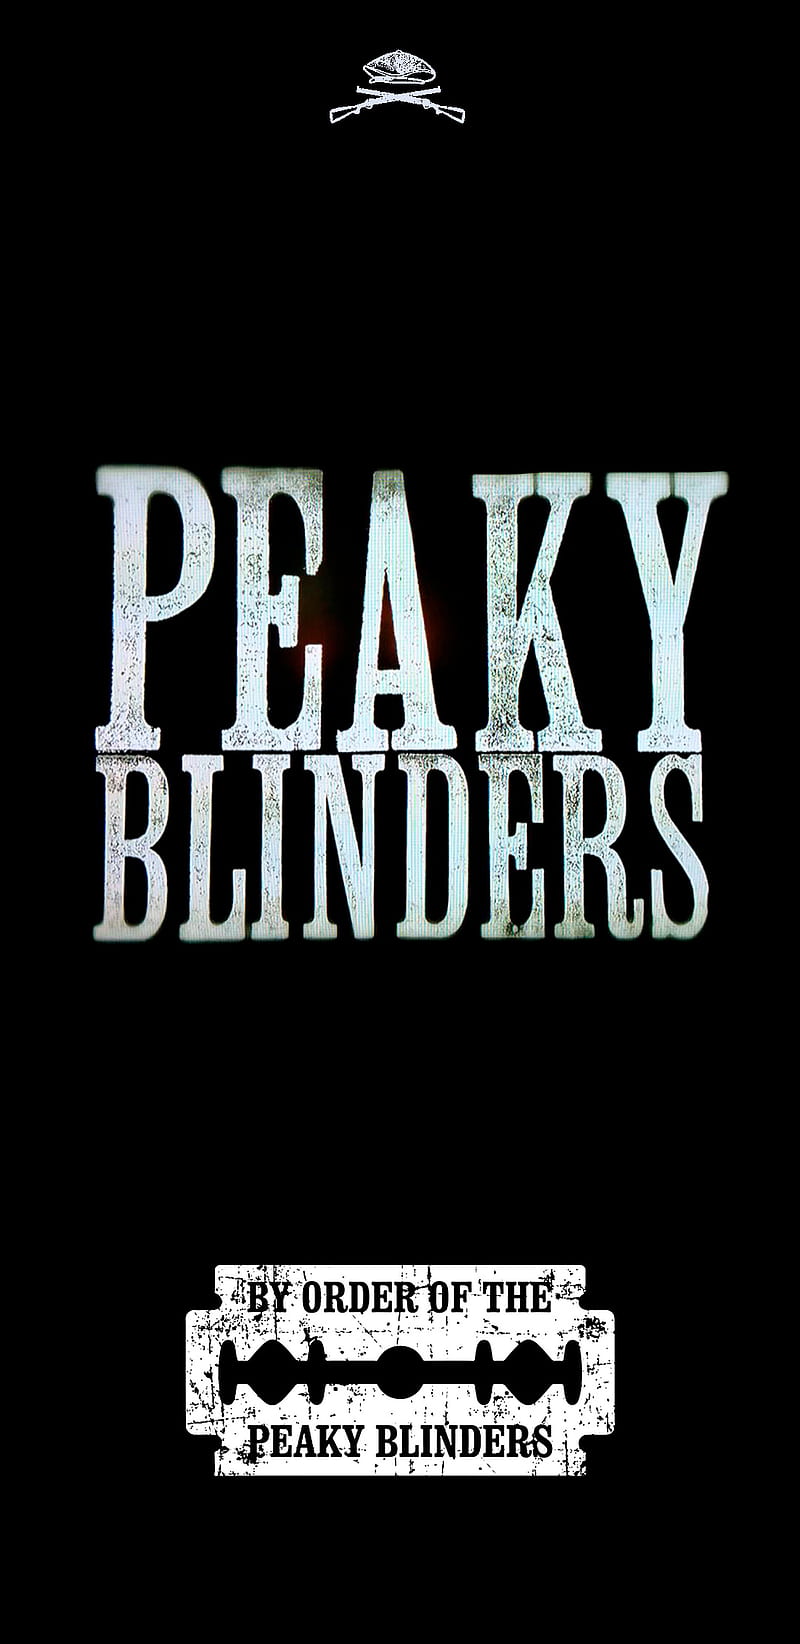 By order of the peaky blinders